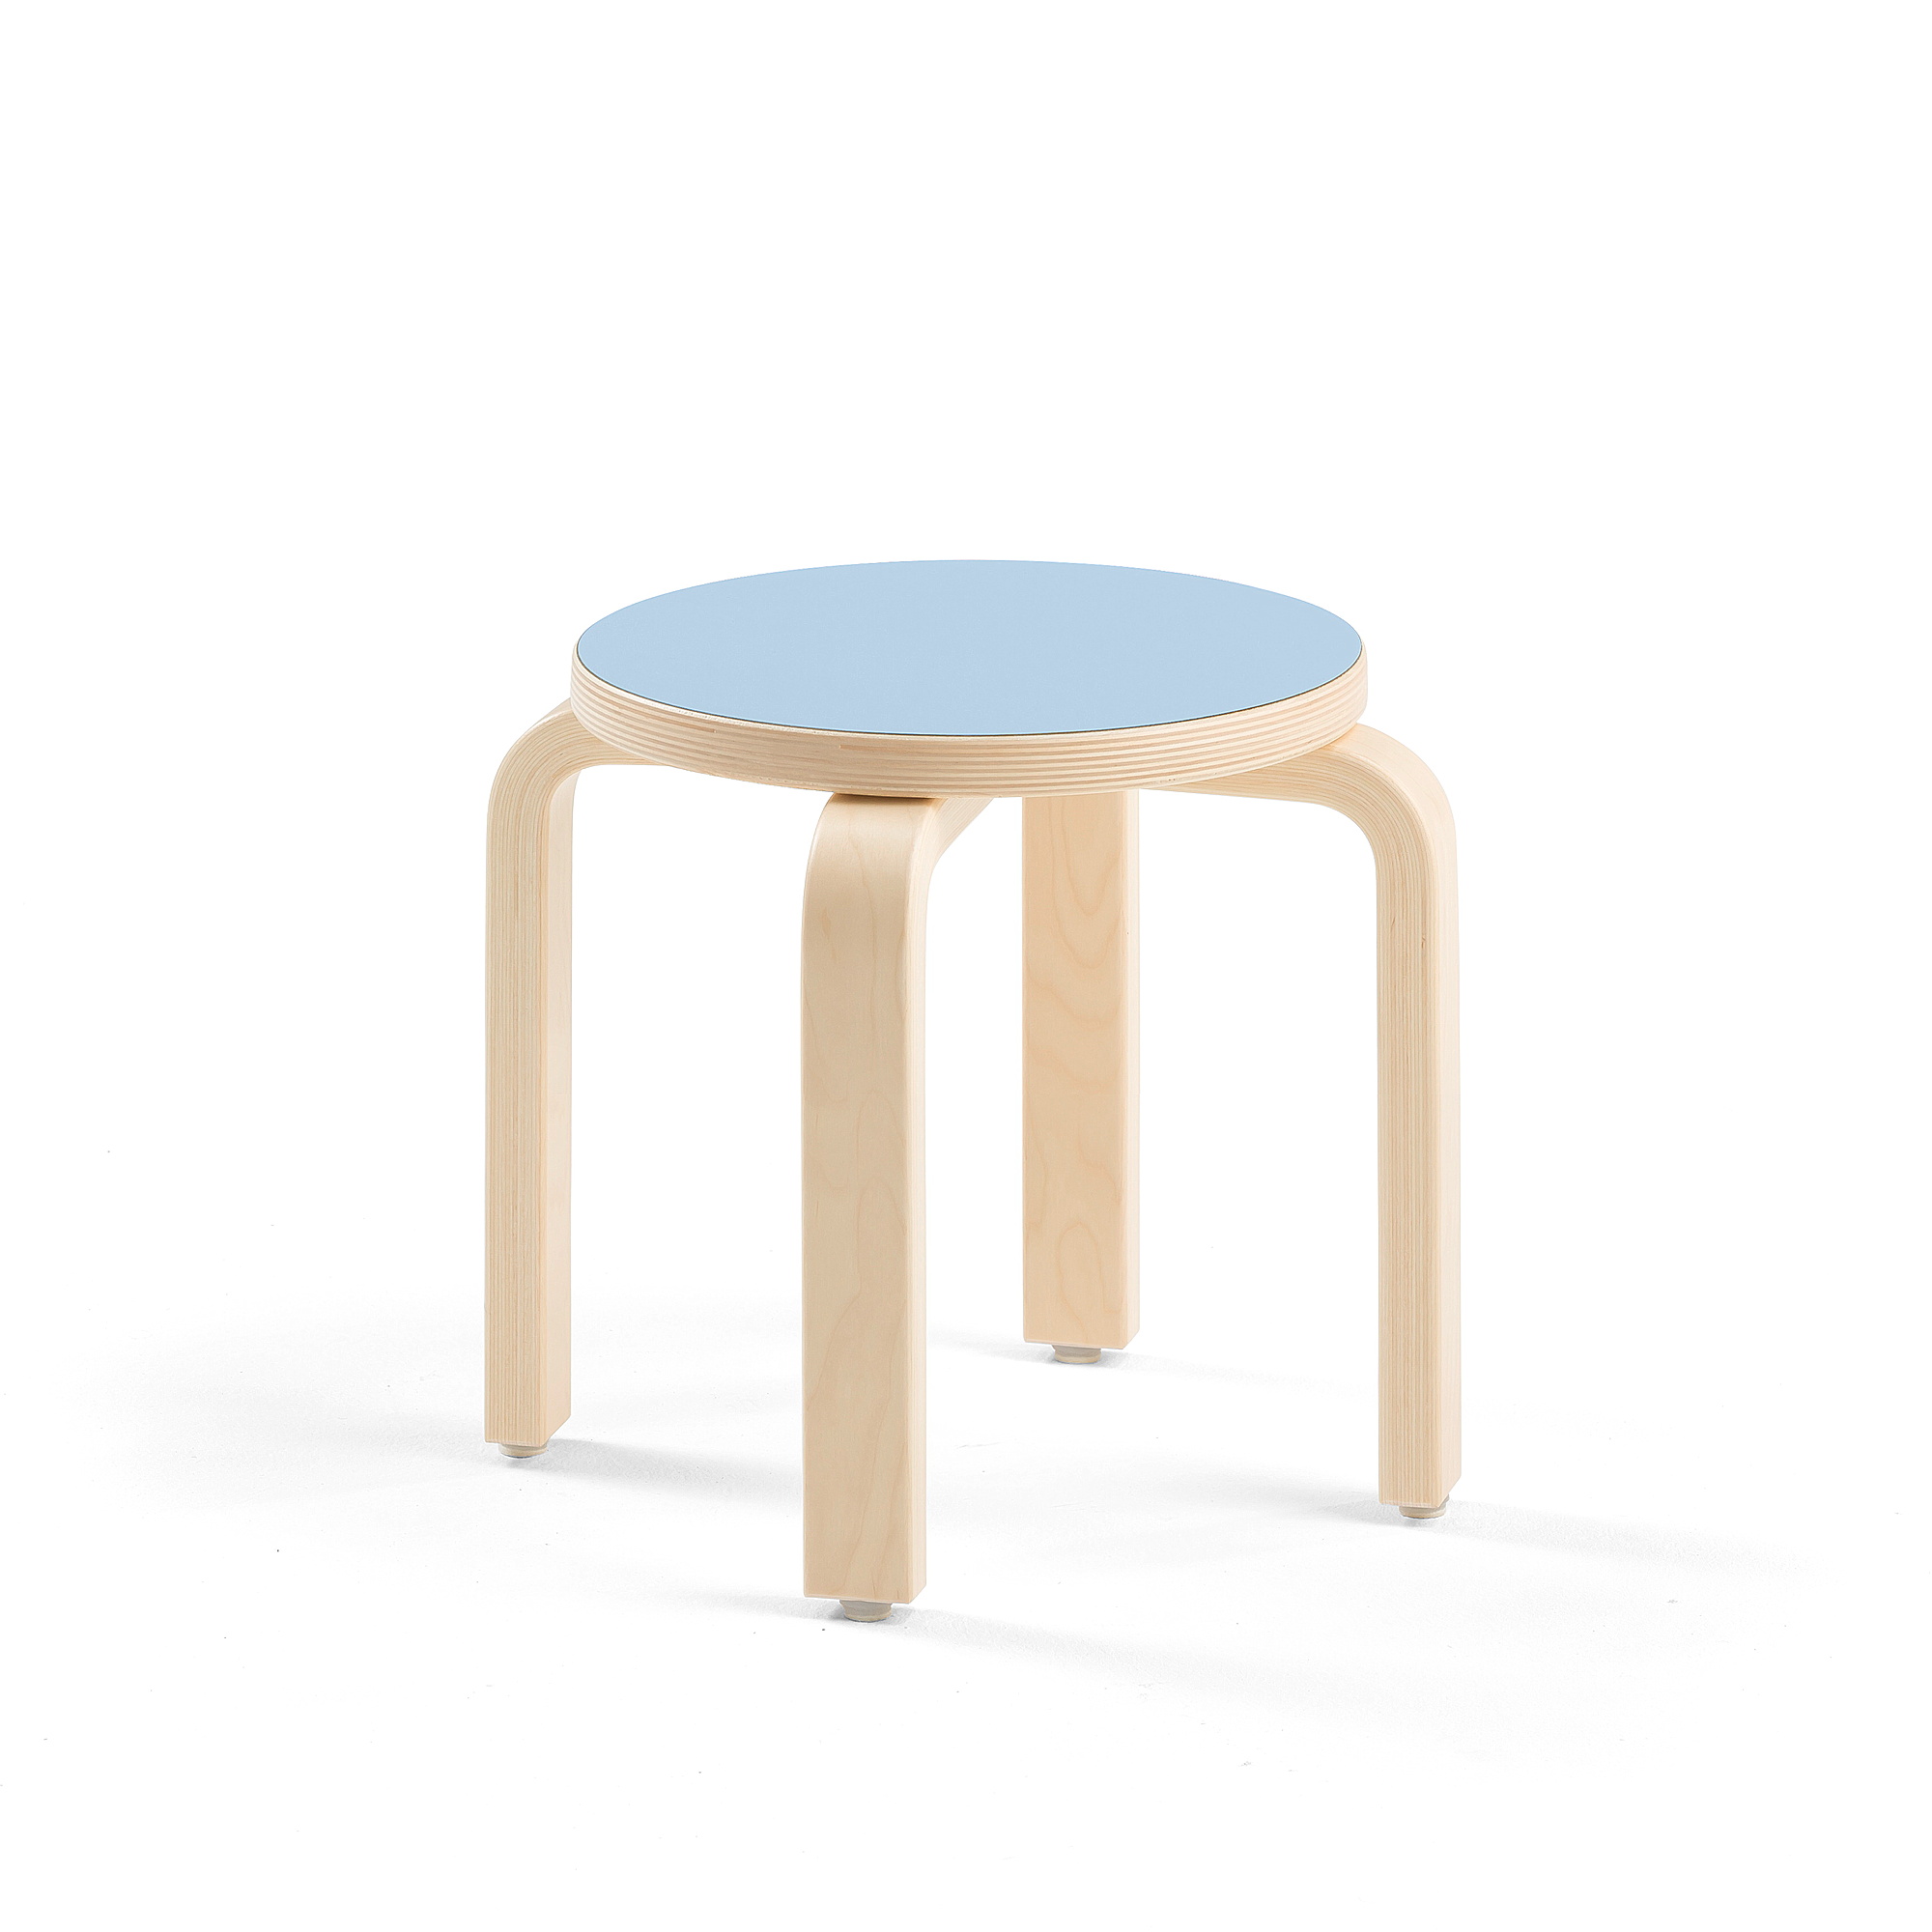 Dětská stolička DANTE, výška 310 mm, bříza/modrá